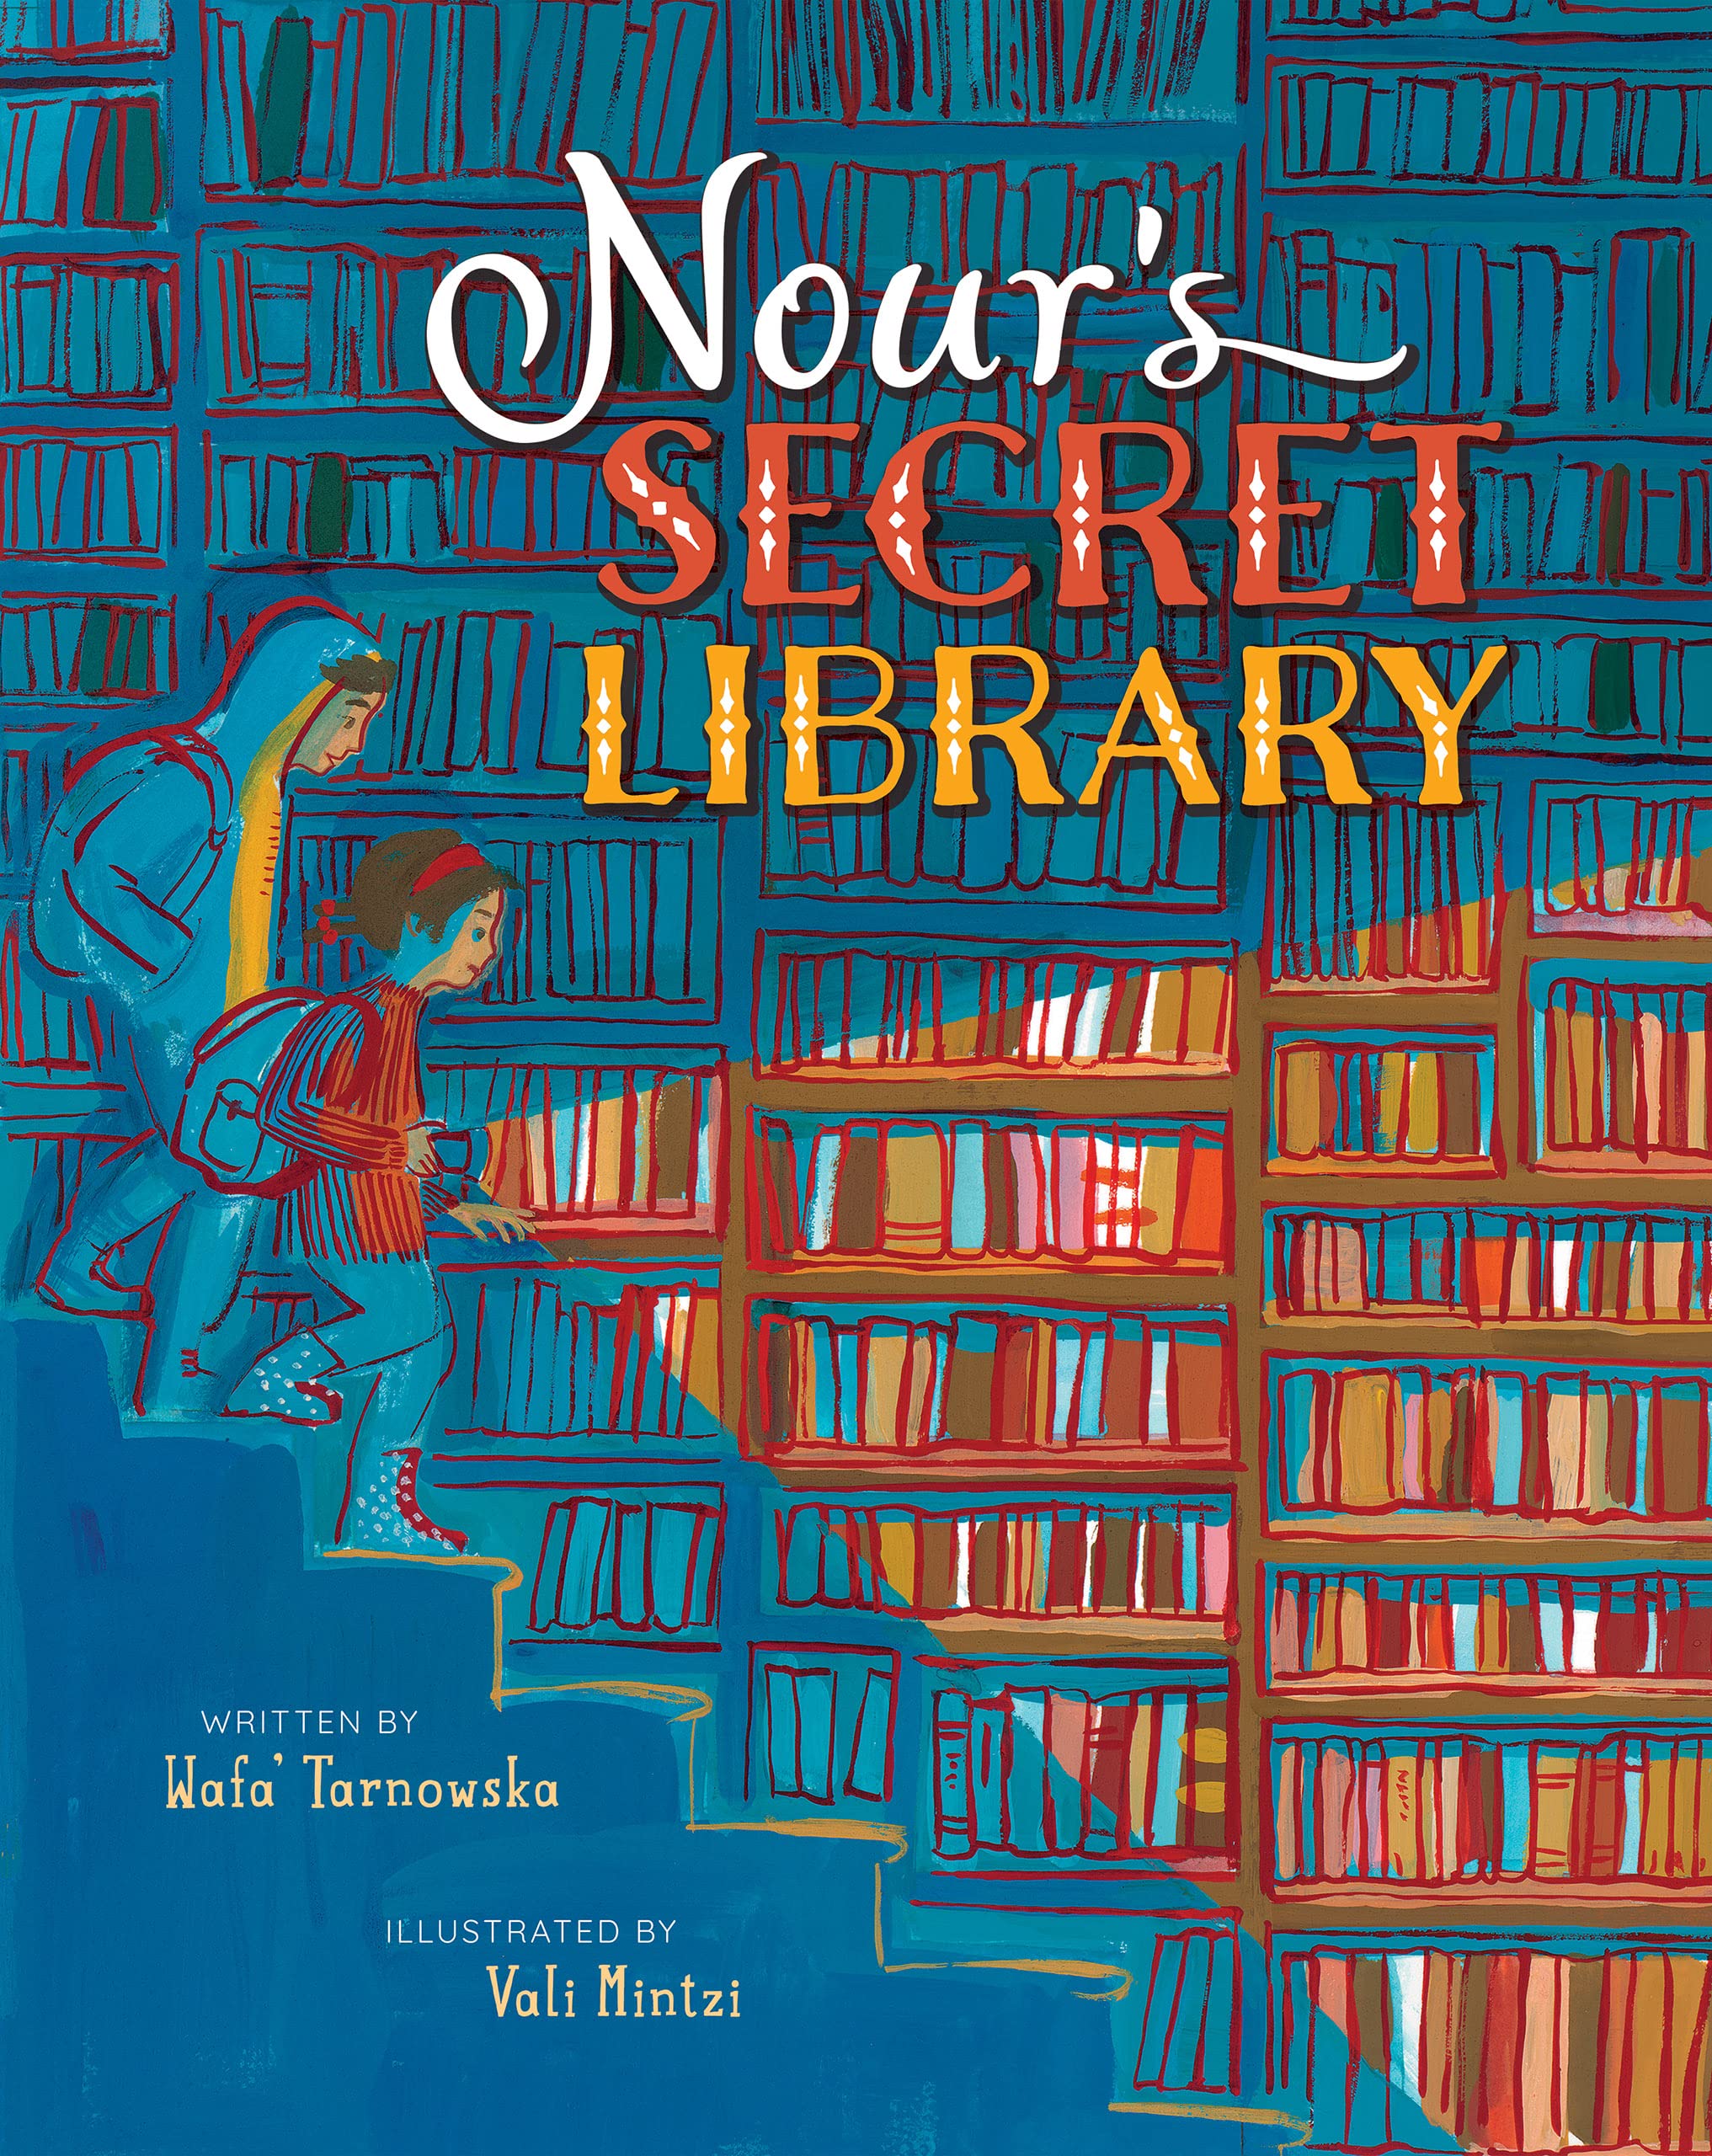 Nour's secret library (cover)